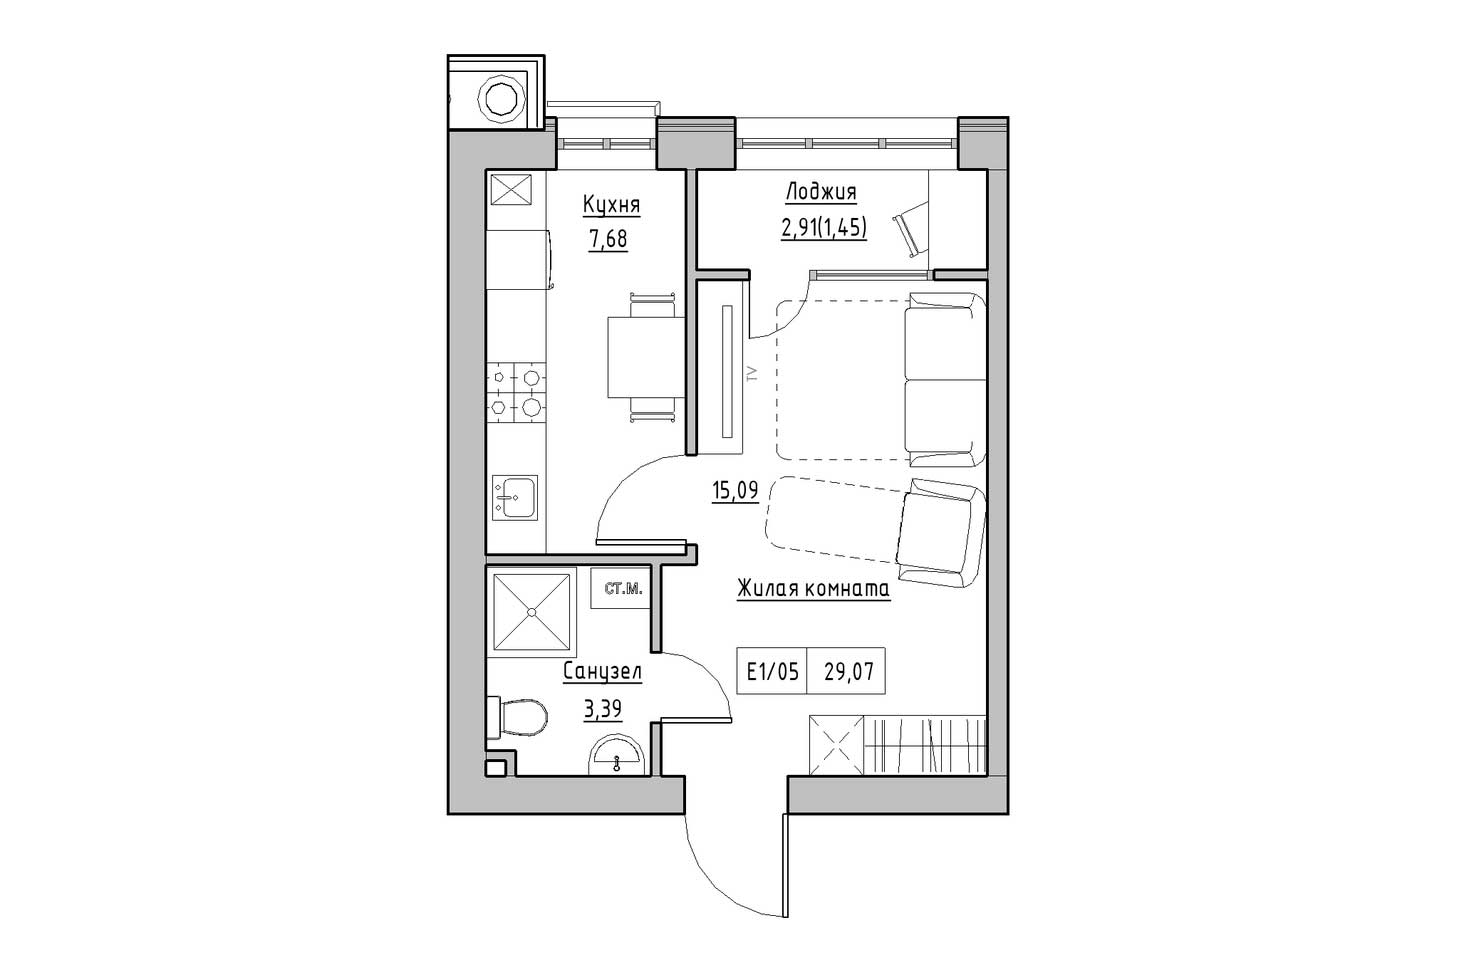 Планування 1-к квартира площею 29.07м2, KS-009-01/0007.